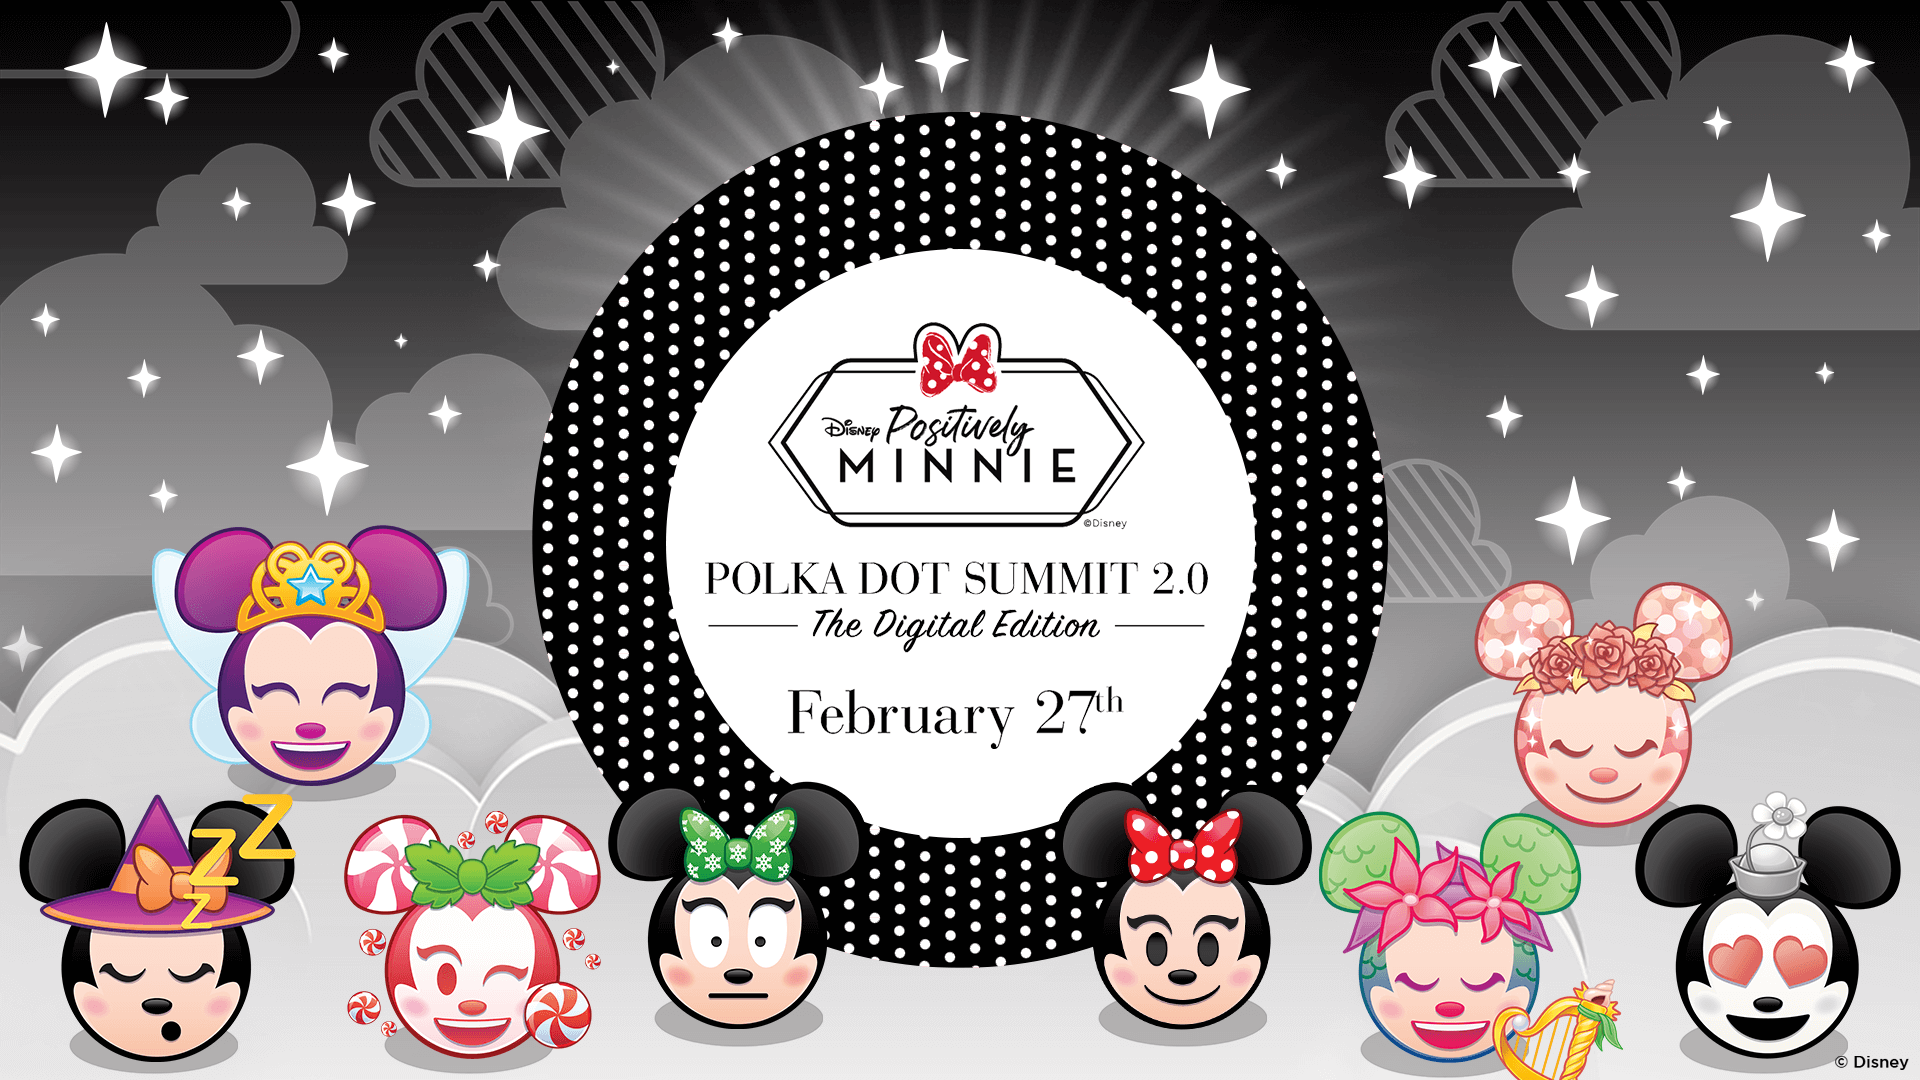 Positively Minnie, Polka Dot Summit 2.0 Digital Edition, February 27th, Disney Emoji Blitz